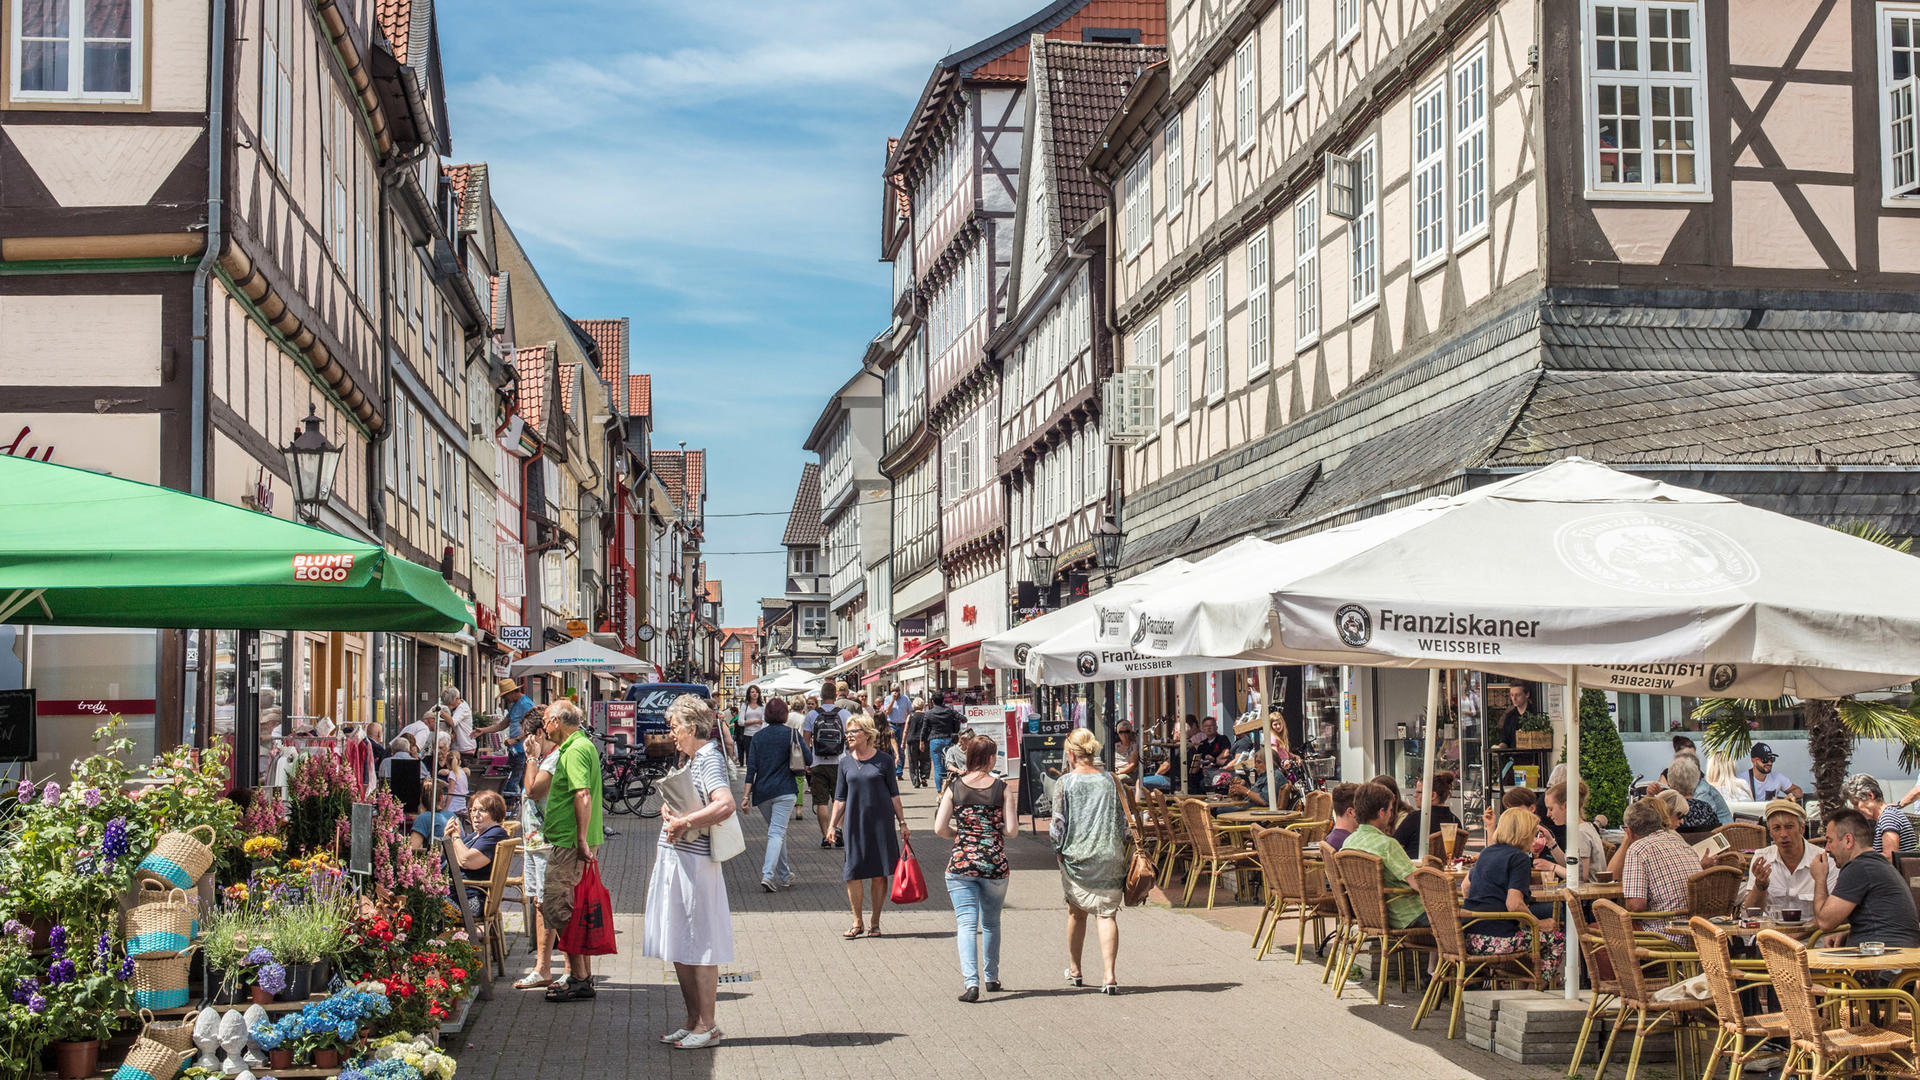 Auf einer gepflasterten Straße in der Innenstadt Wolfenbüttels befinden sich viele Personen. Einige davon stehen an Geschäften oder sitzen unter Sonnenschirmen. Links und rechts der Straße sind Fachwerkhäuser zu erkennen.